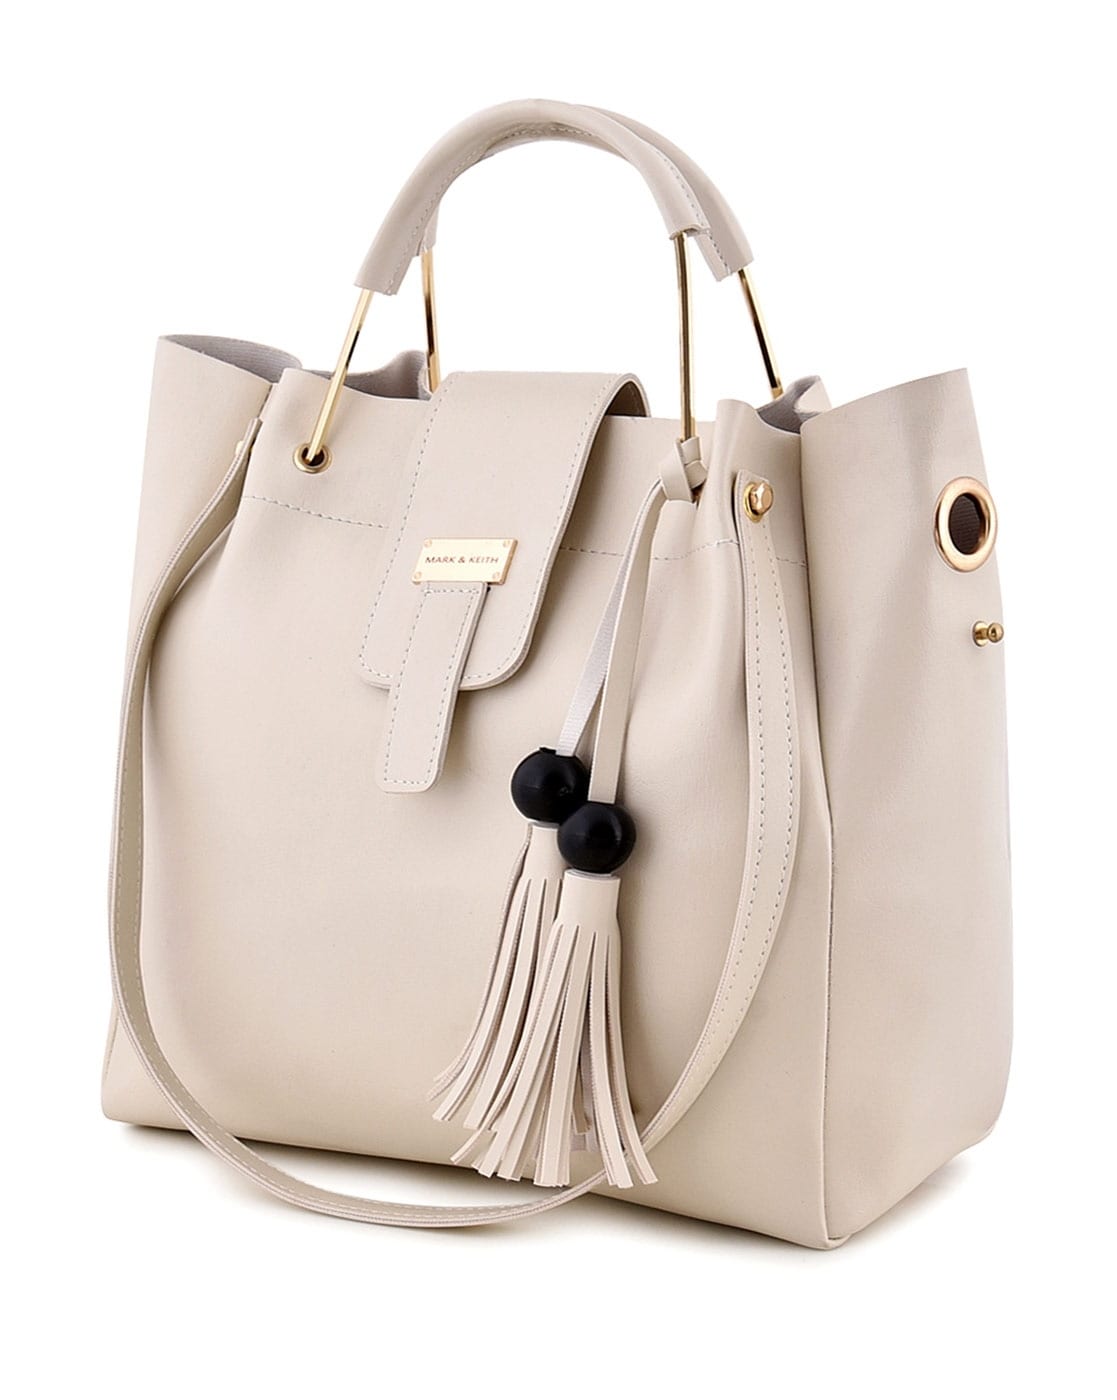 Handbags Purses Designer Bag for Women New 100%Cowhide Handbags Fashion  Ladies Shoulder Messenger Bags Tote Bag Luxury Brand